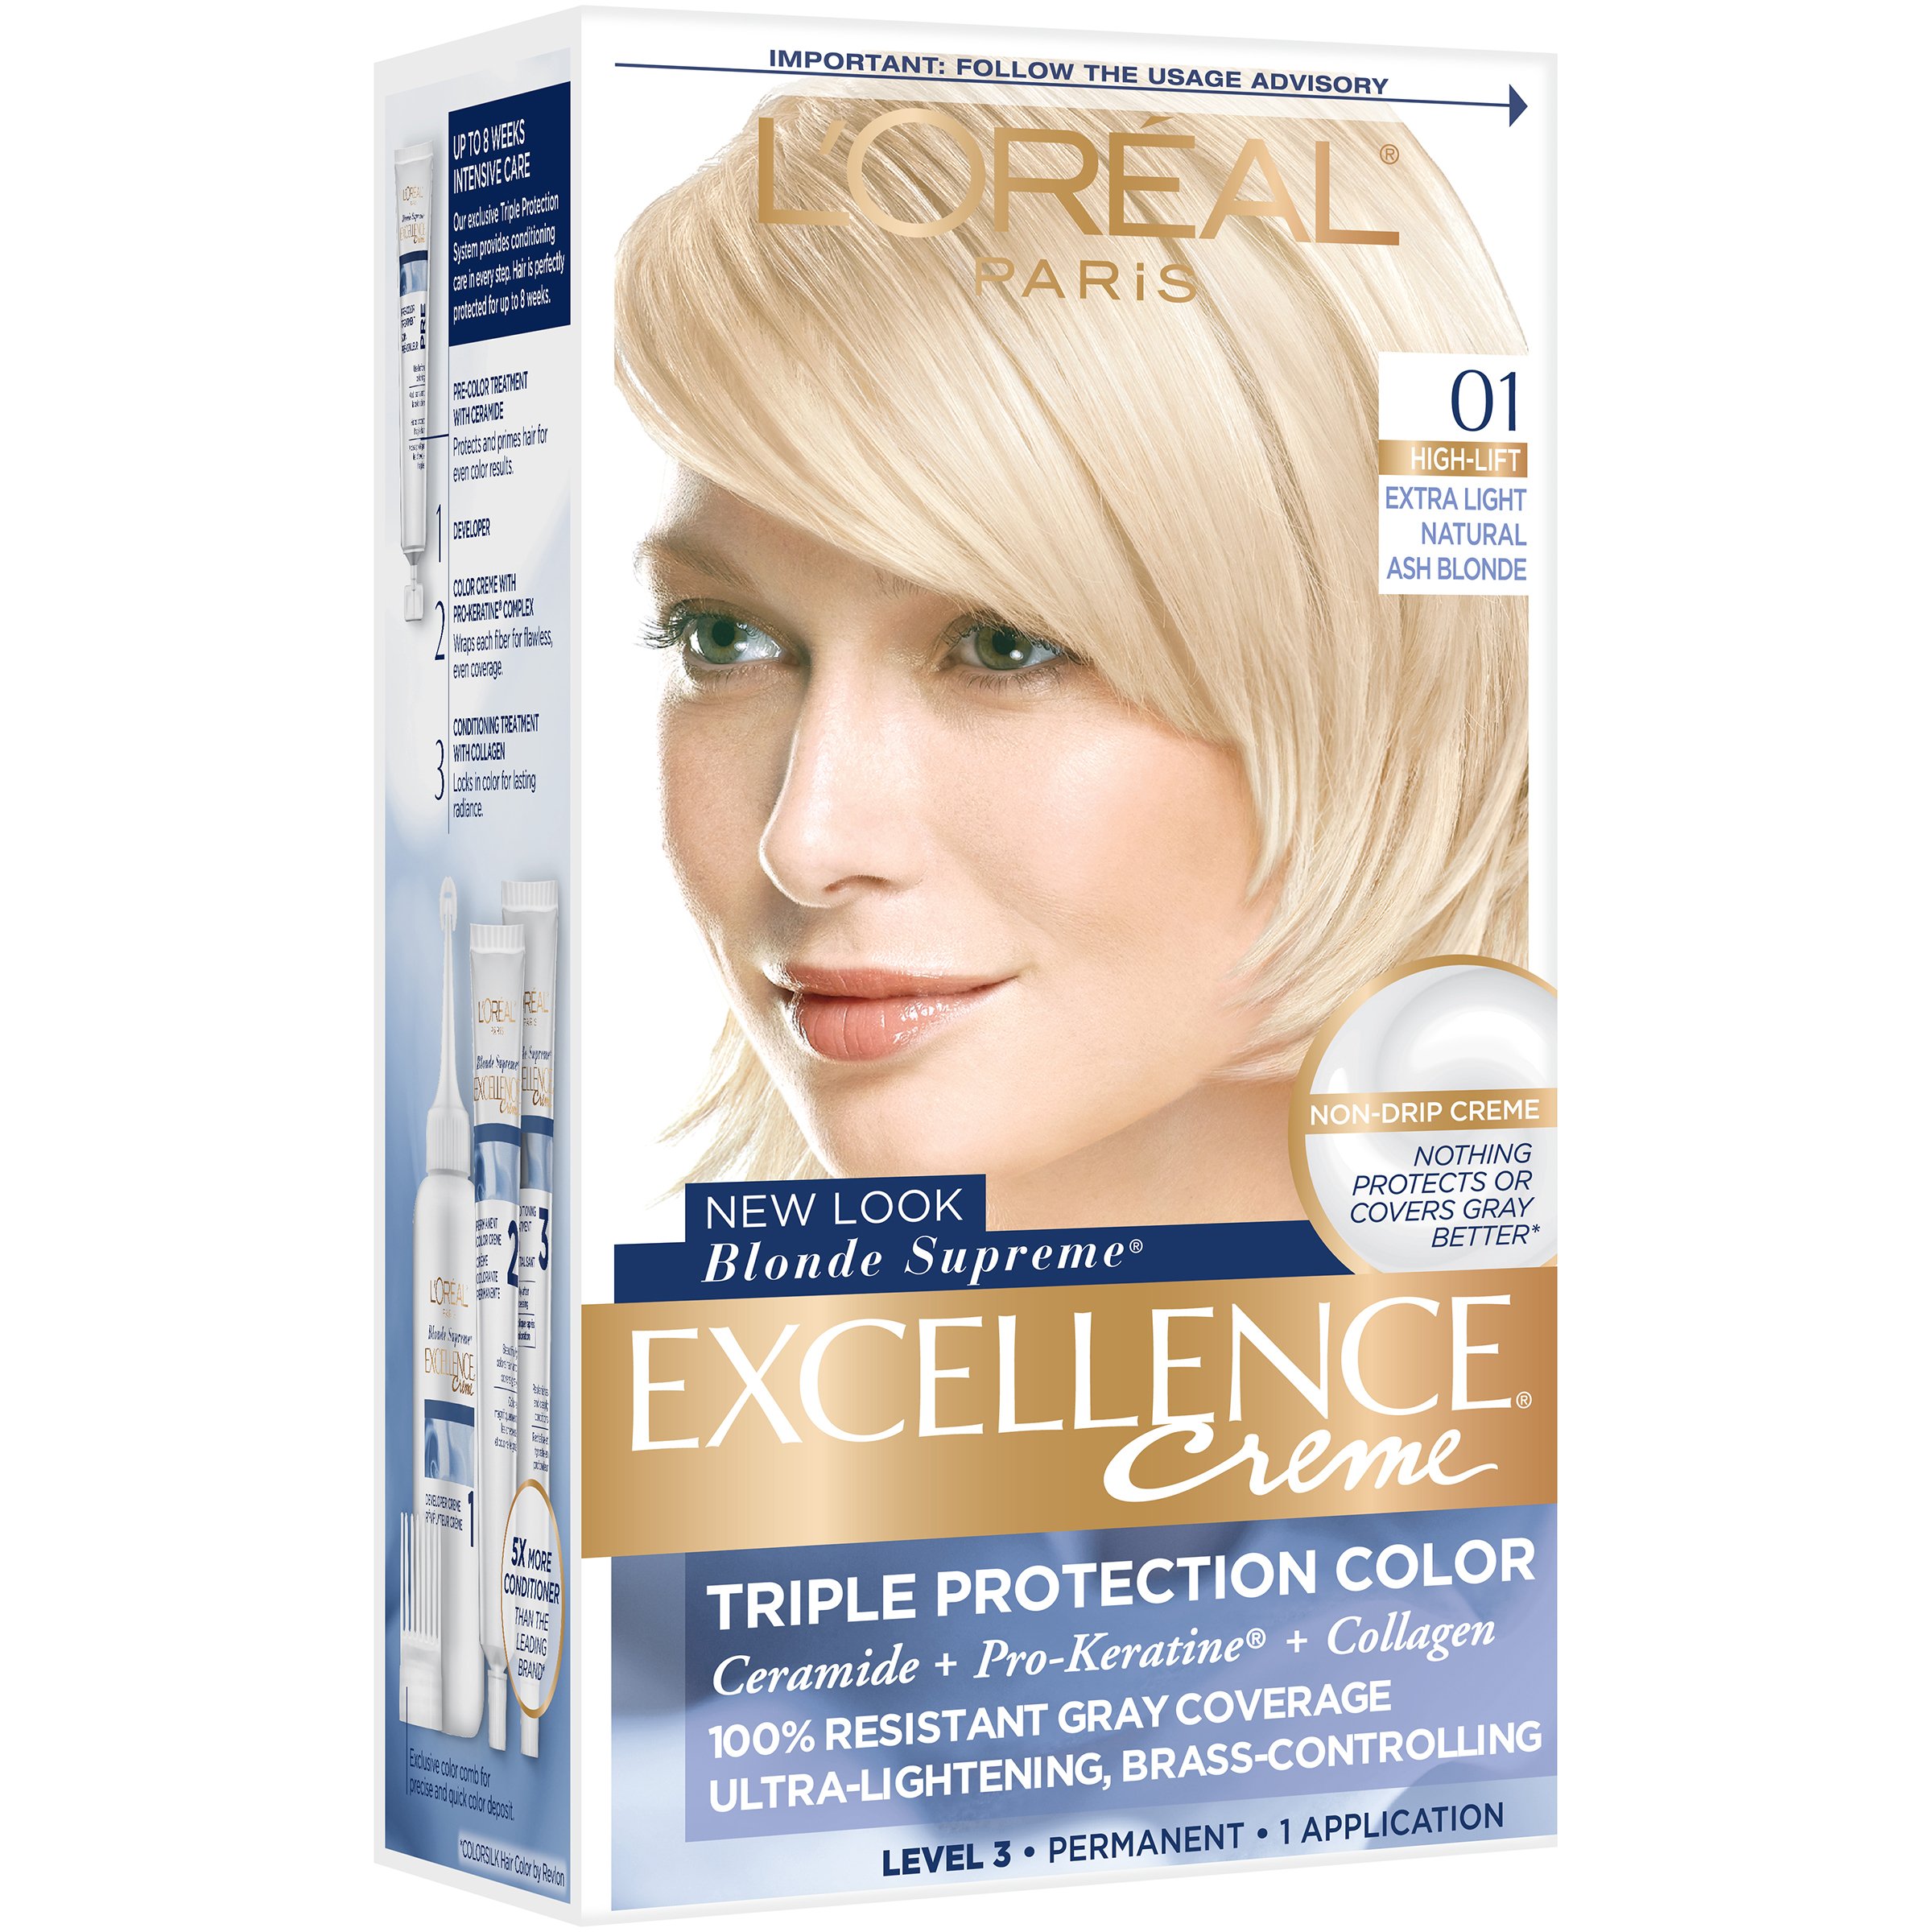 L'Oréal Paris Excellence Créme Permanent 01 Extra Light Blonde - Shop Hair Color at H-E-B